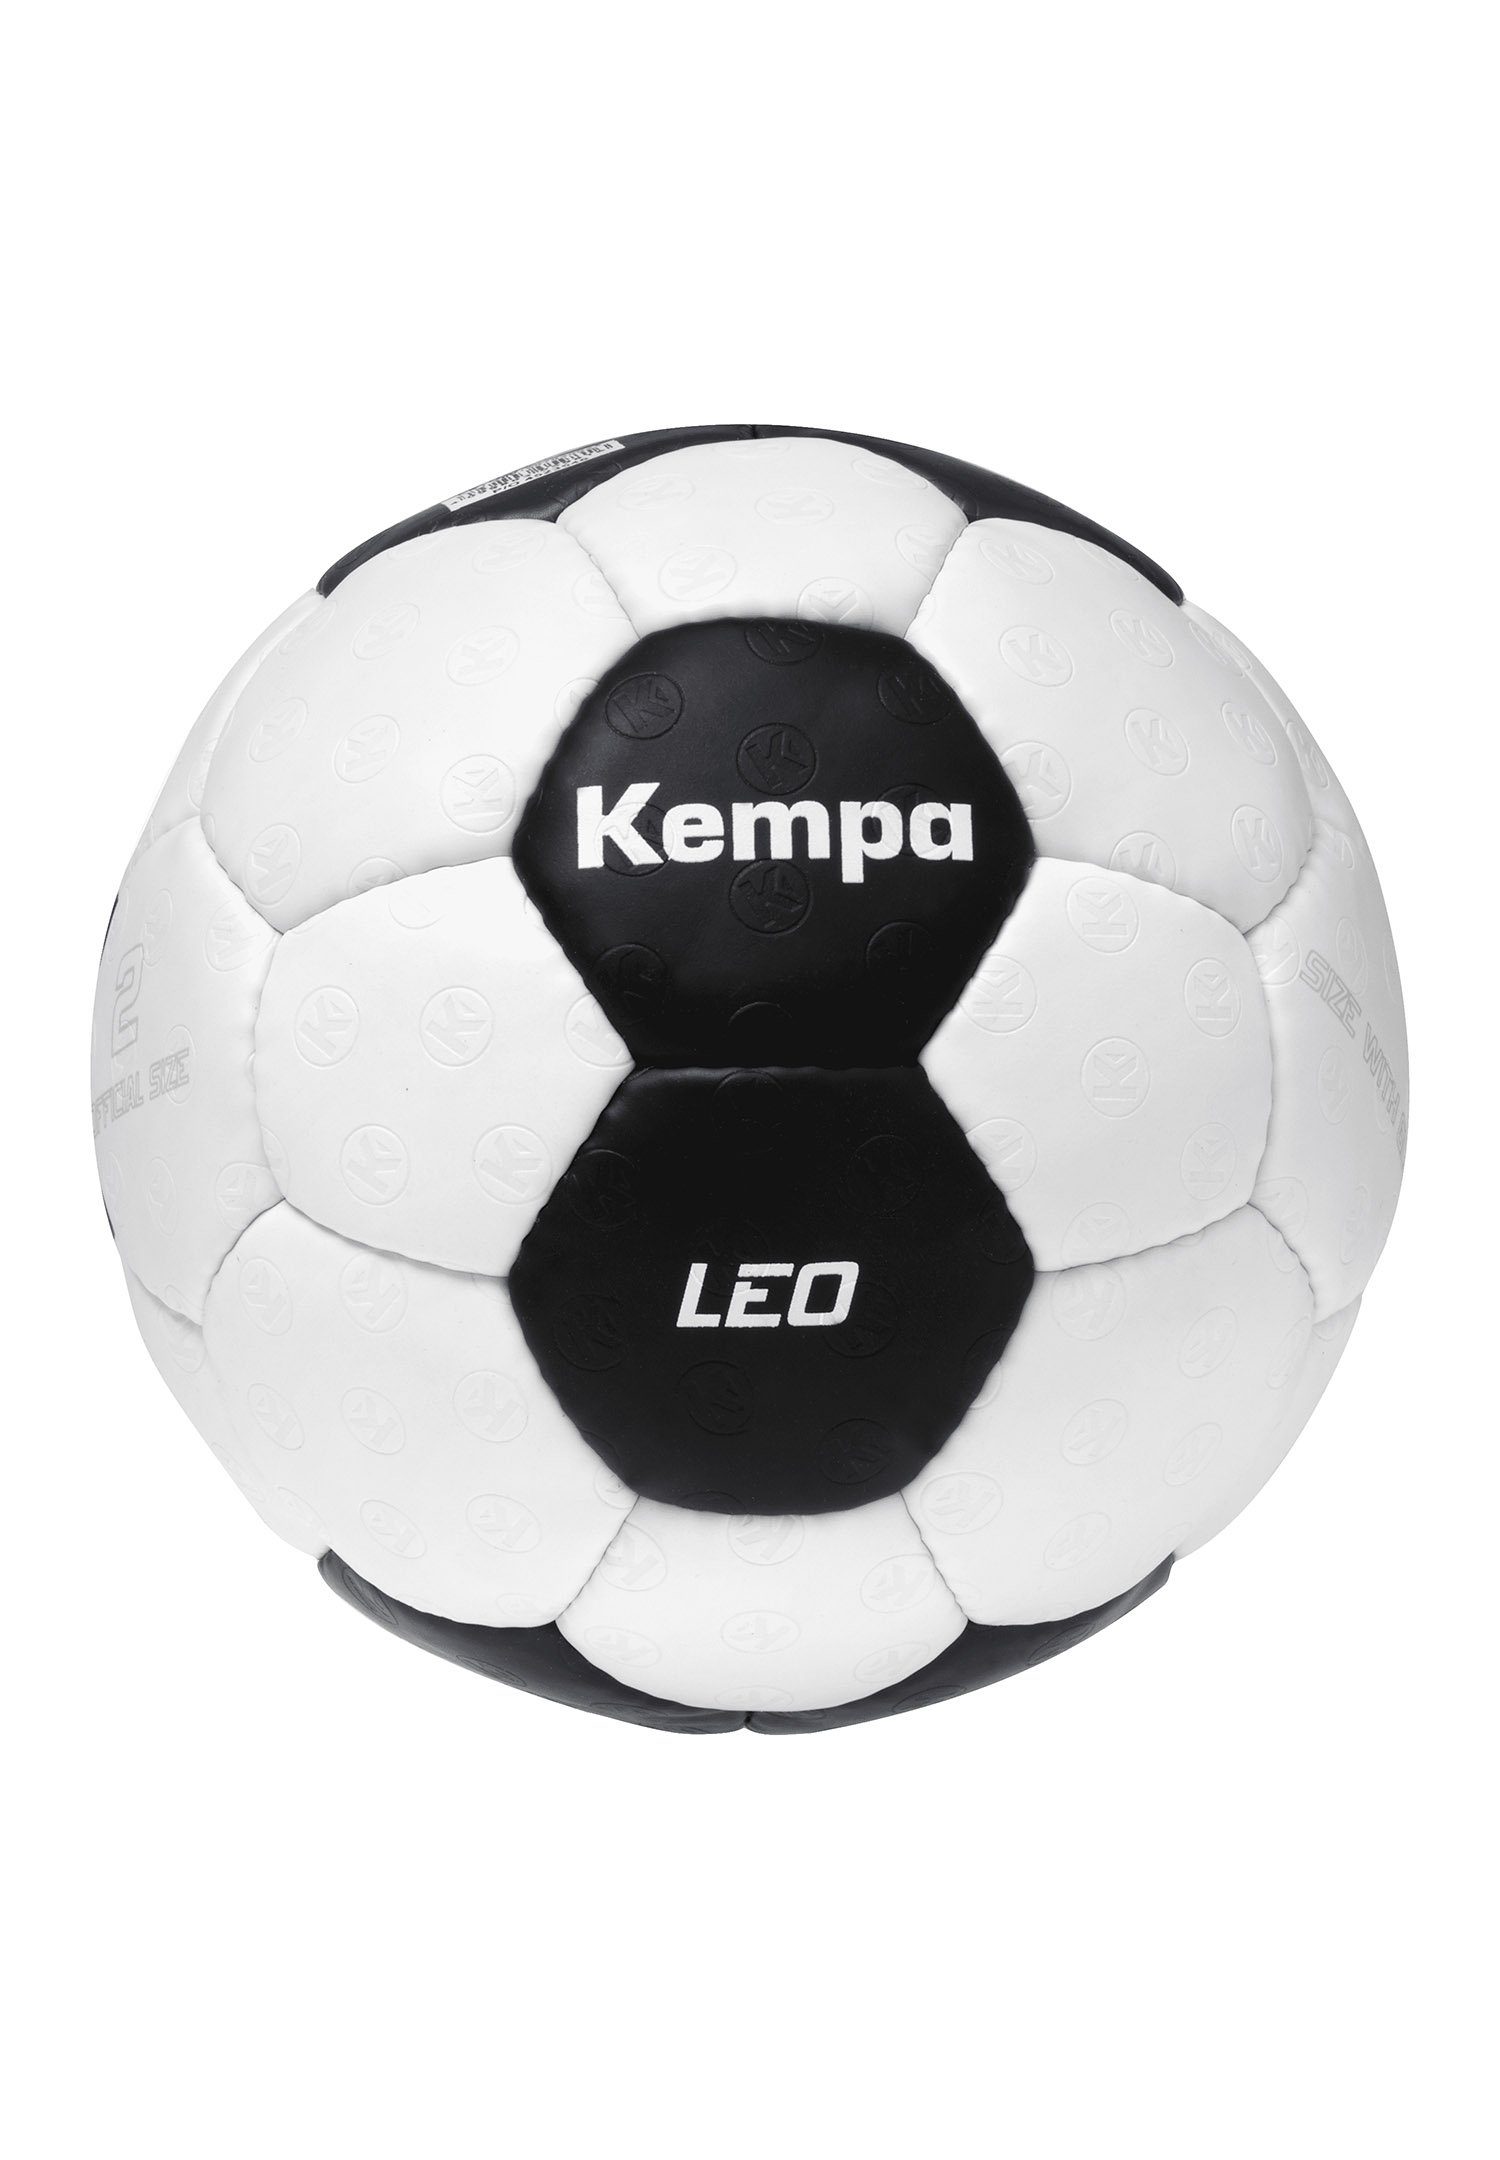 Kempa Fußball Leo Game Changer